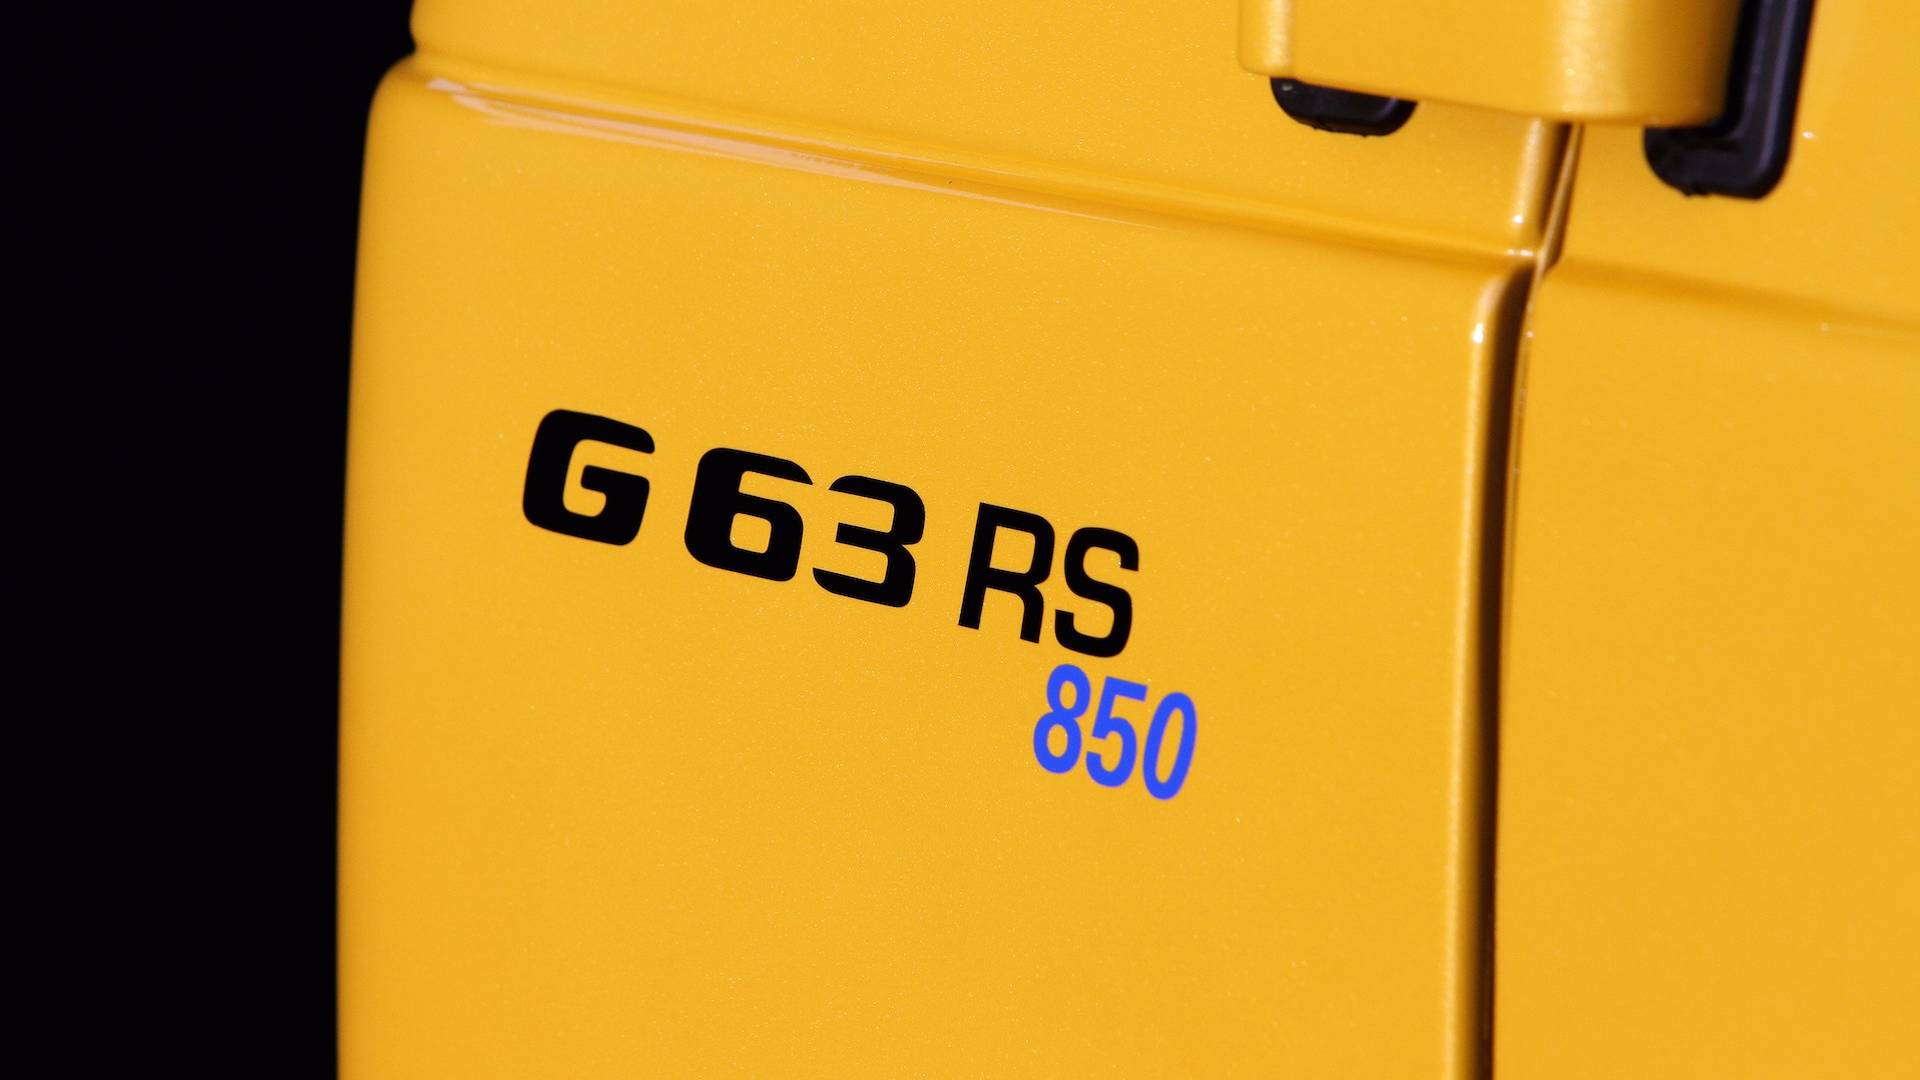 Posaidon G63 RS 850